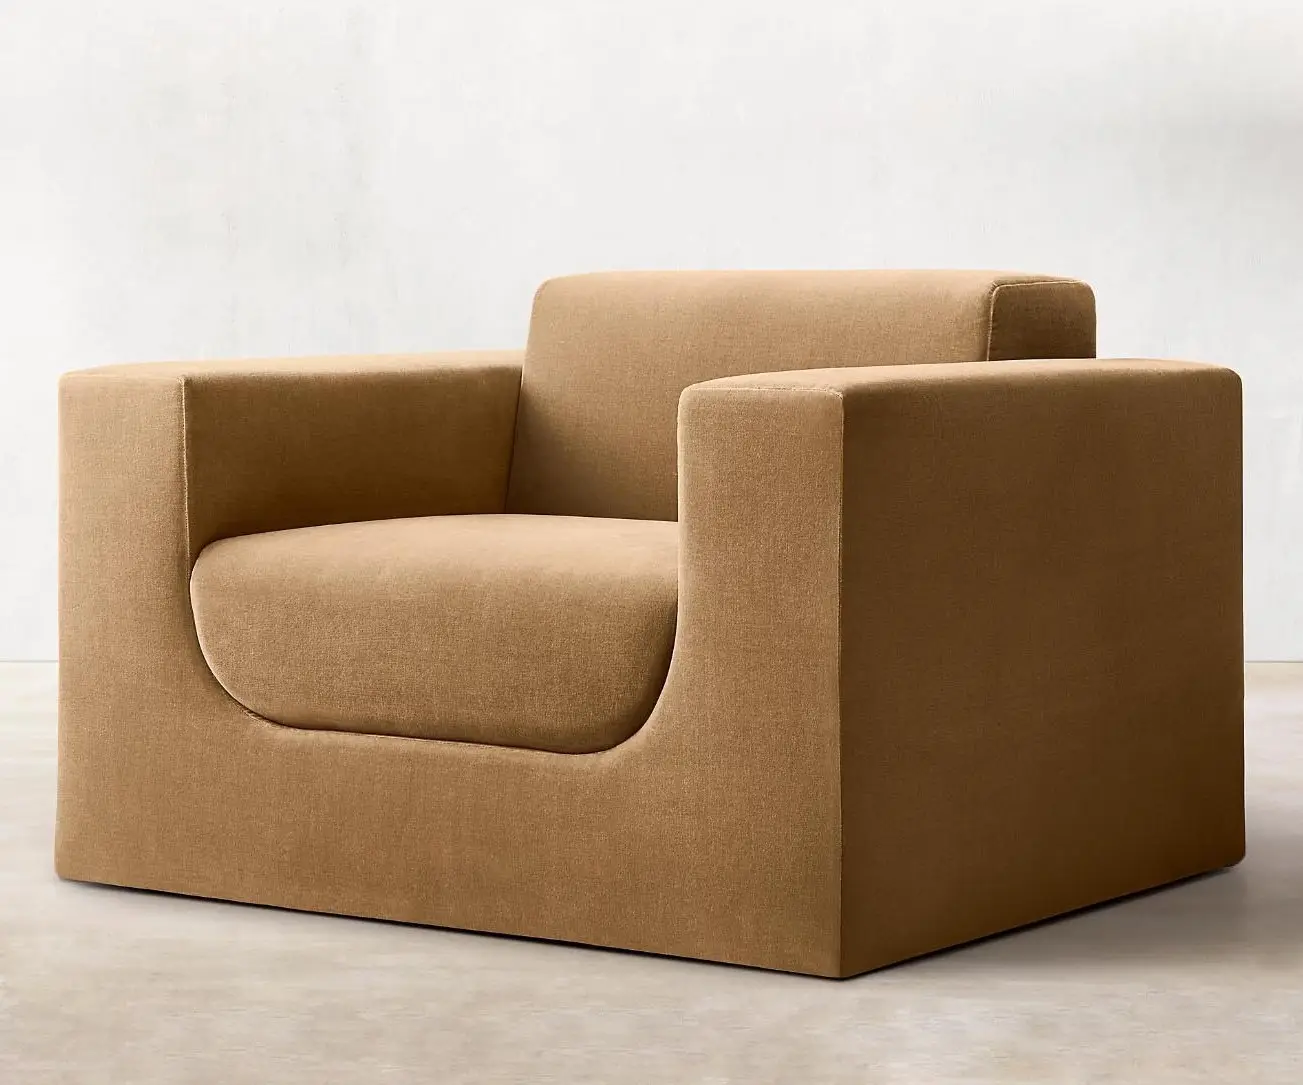 Benutzer definierte bequeme Wohn möbel Stoff Sessel Luxus Design Entspannende Lounge Liegestuhl Modernes Wohnzimmer Einzels ofa Stuhl